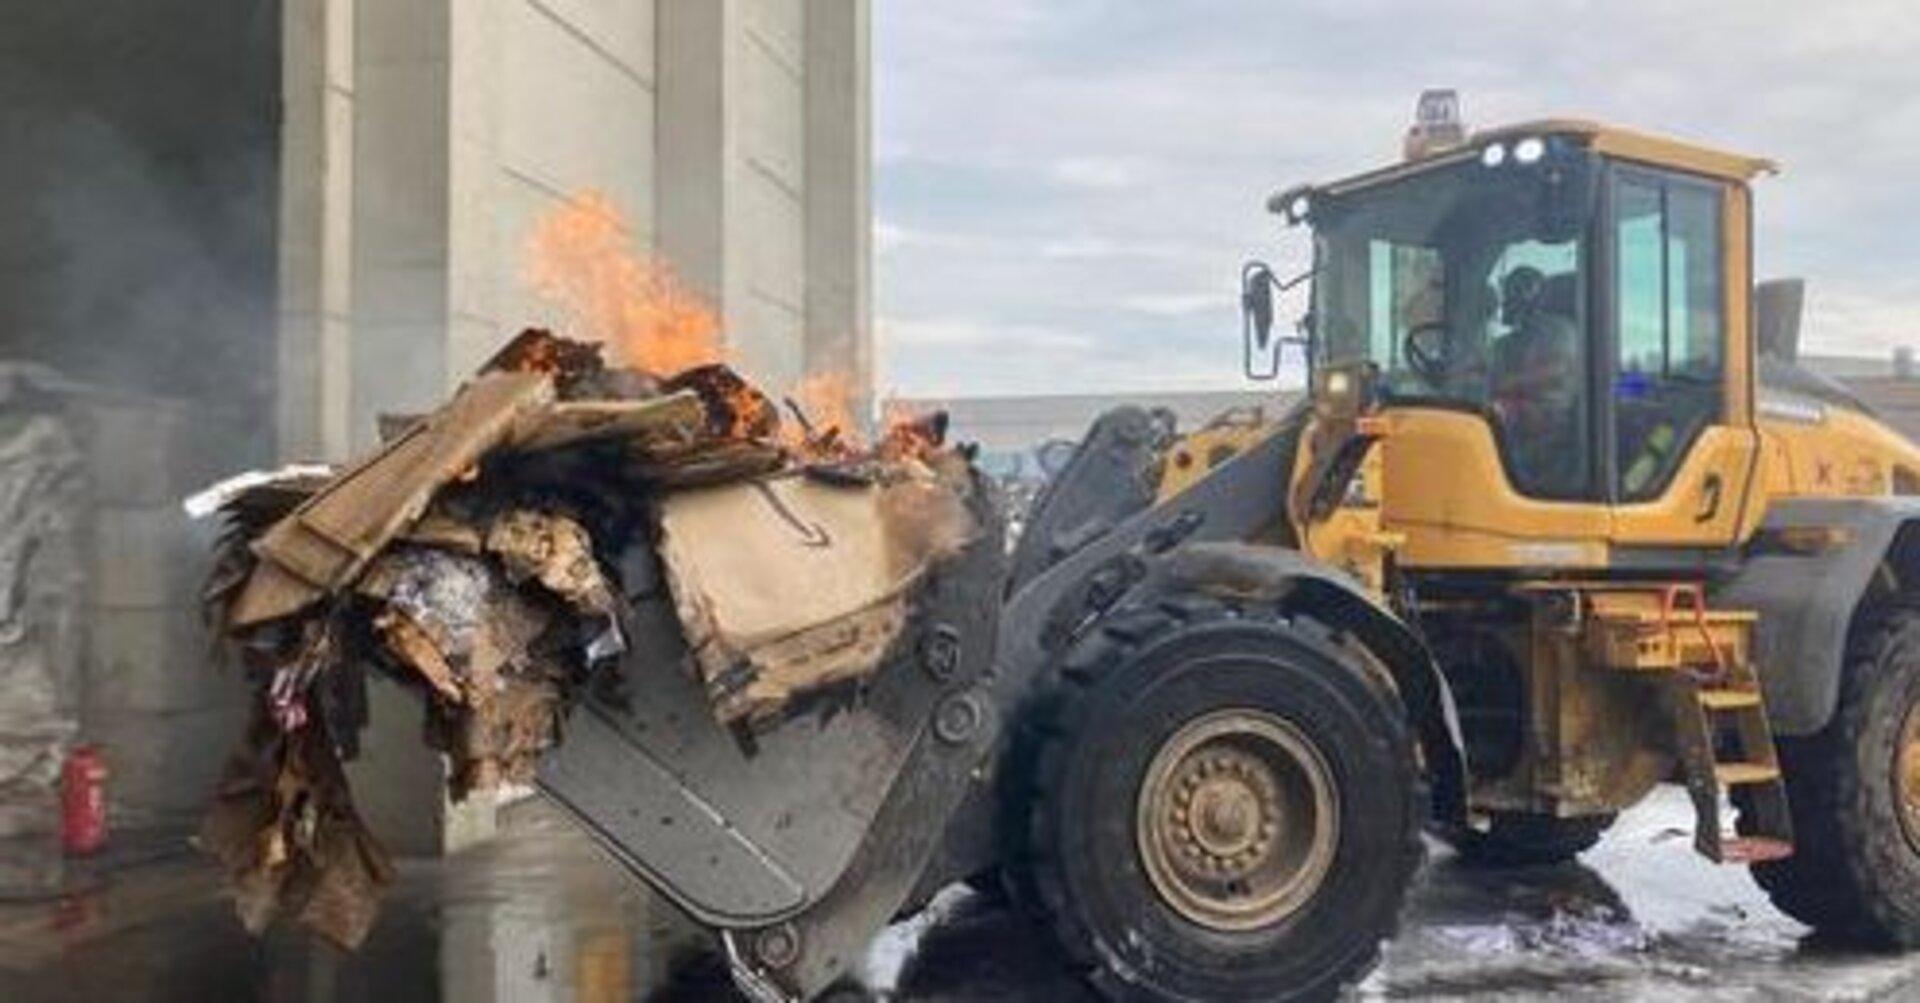 NÖ: Alarm um gefährlichen  Brand in Recyclingbetrieb